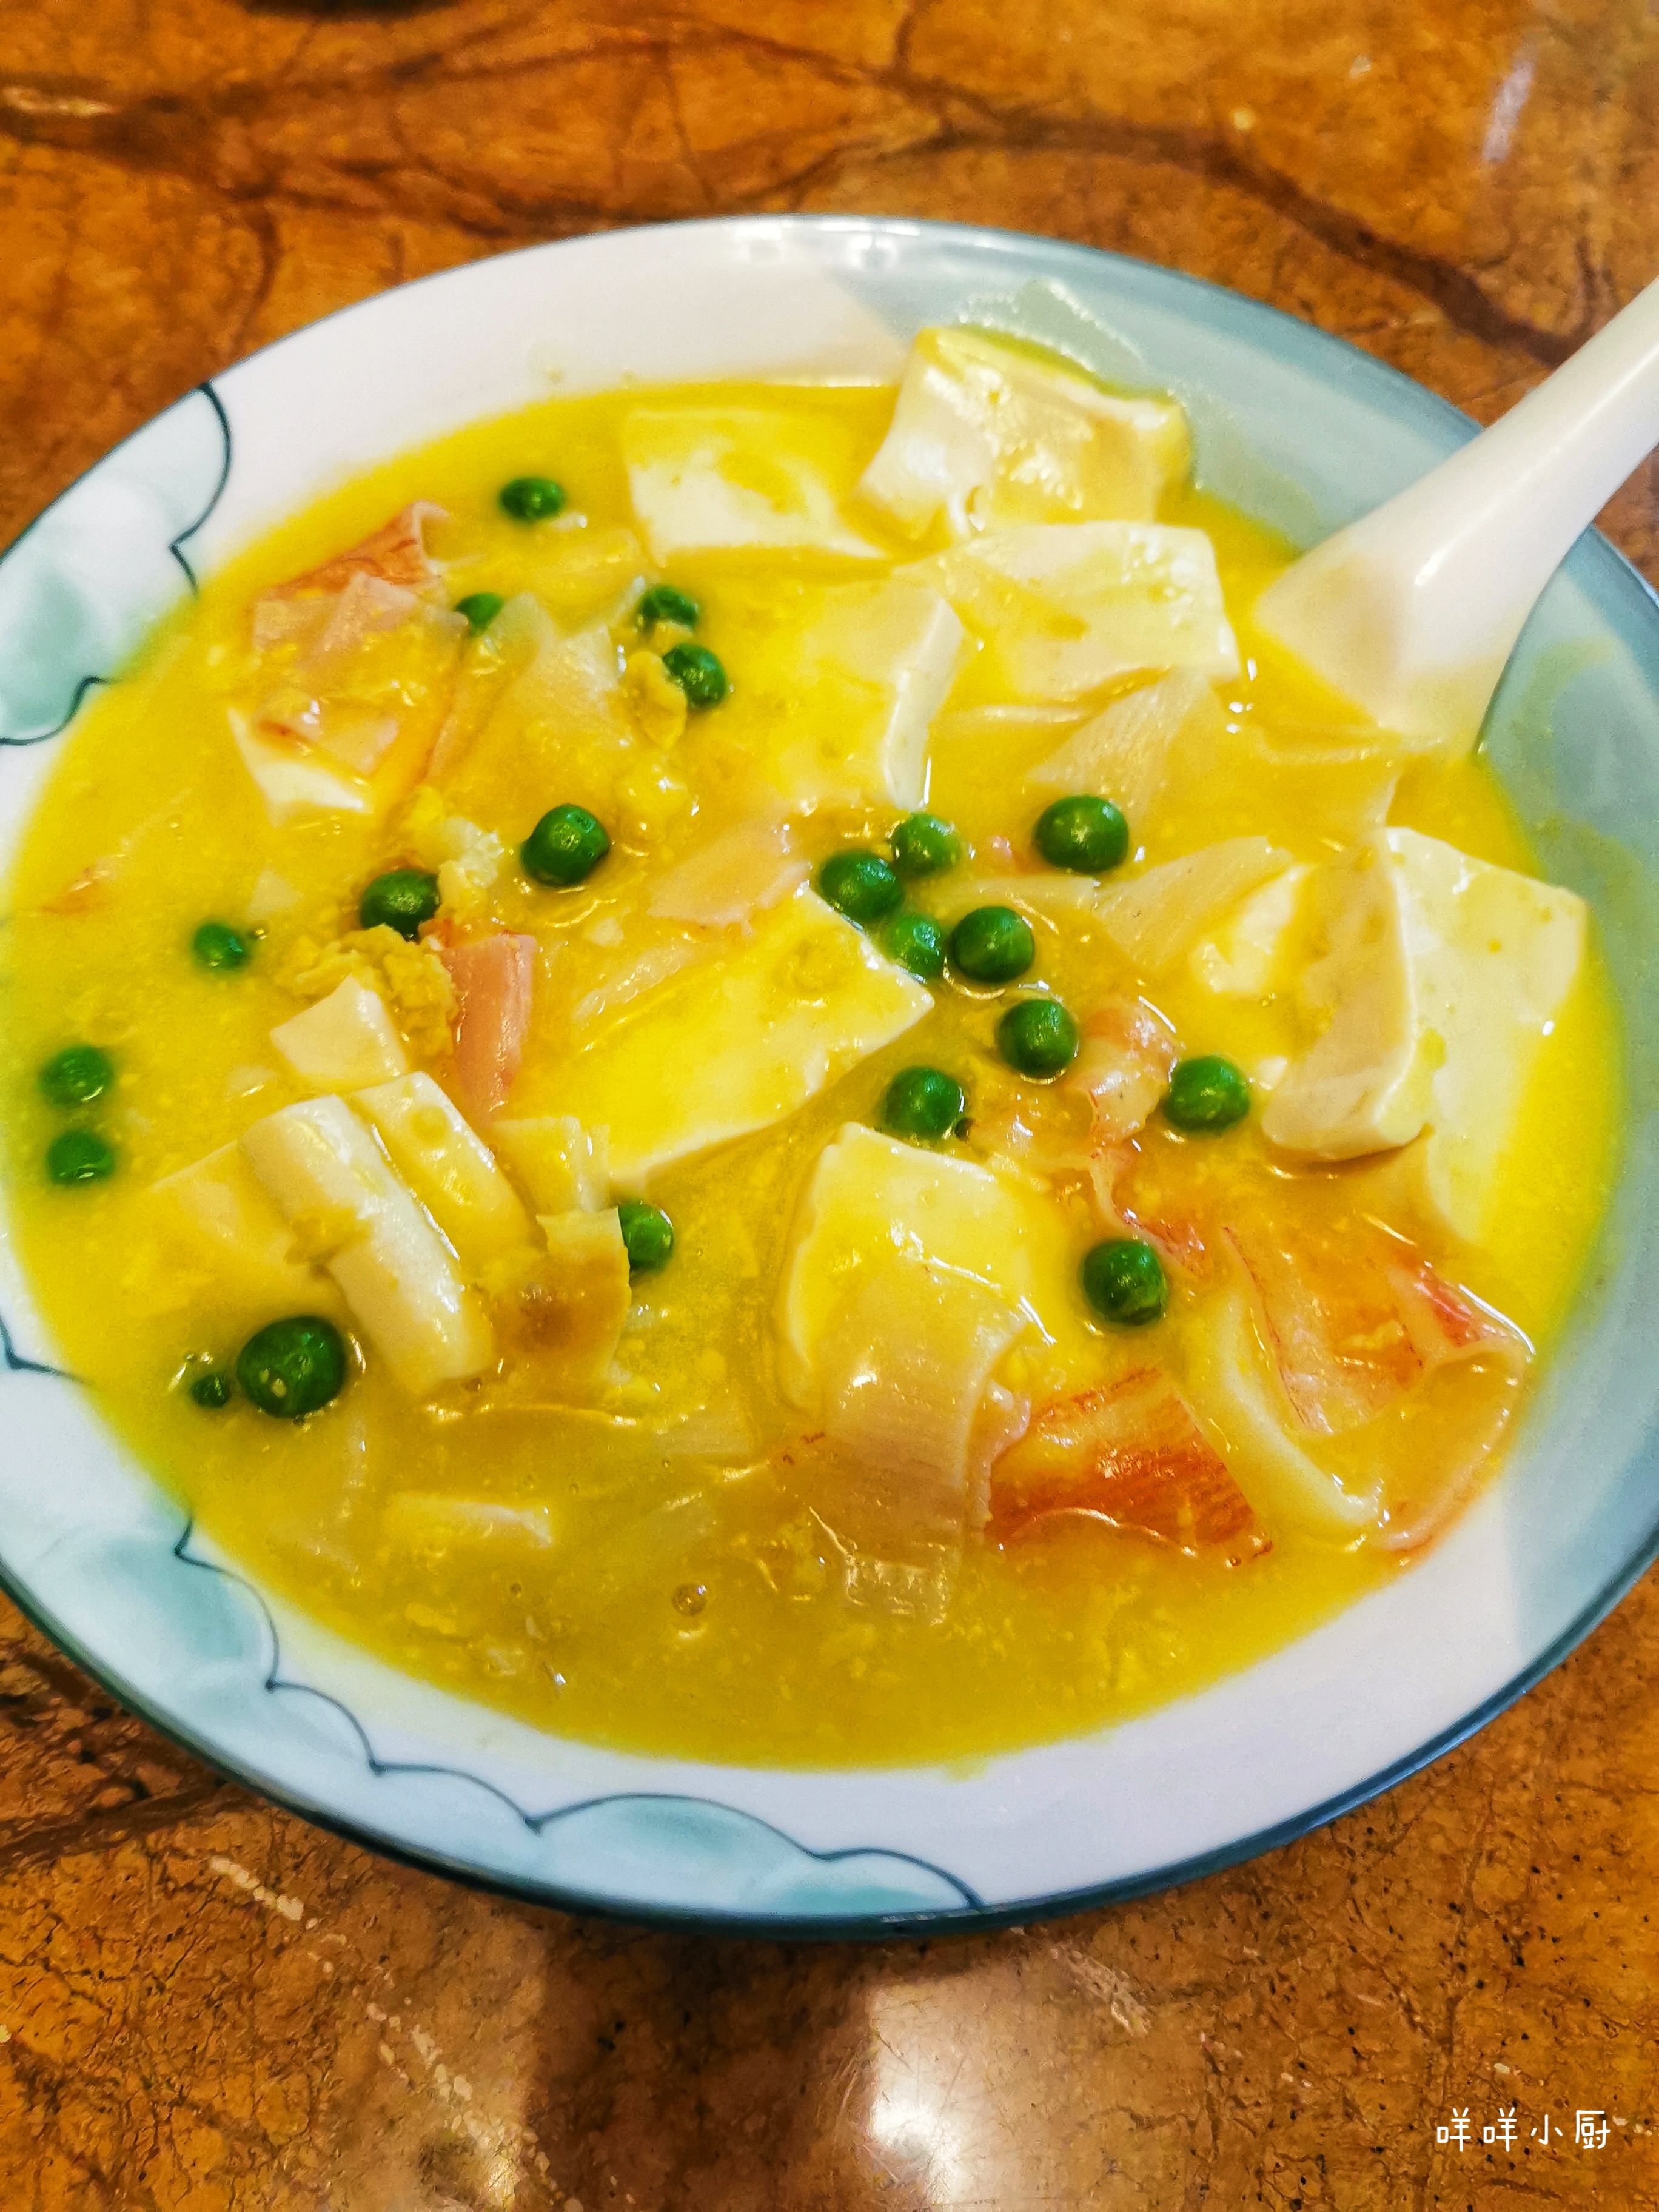 汤浓味鲜的咸蛋黄豆腐煲,营养美味,开胃下饭,操作简单易学